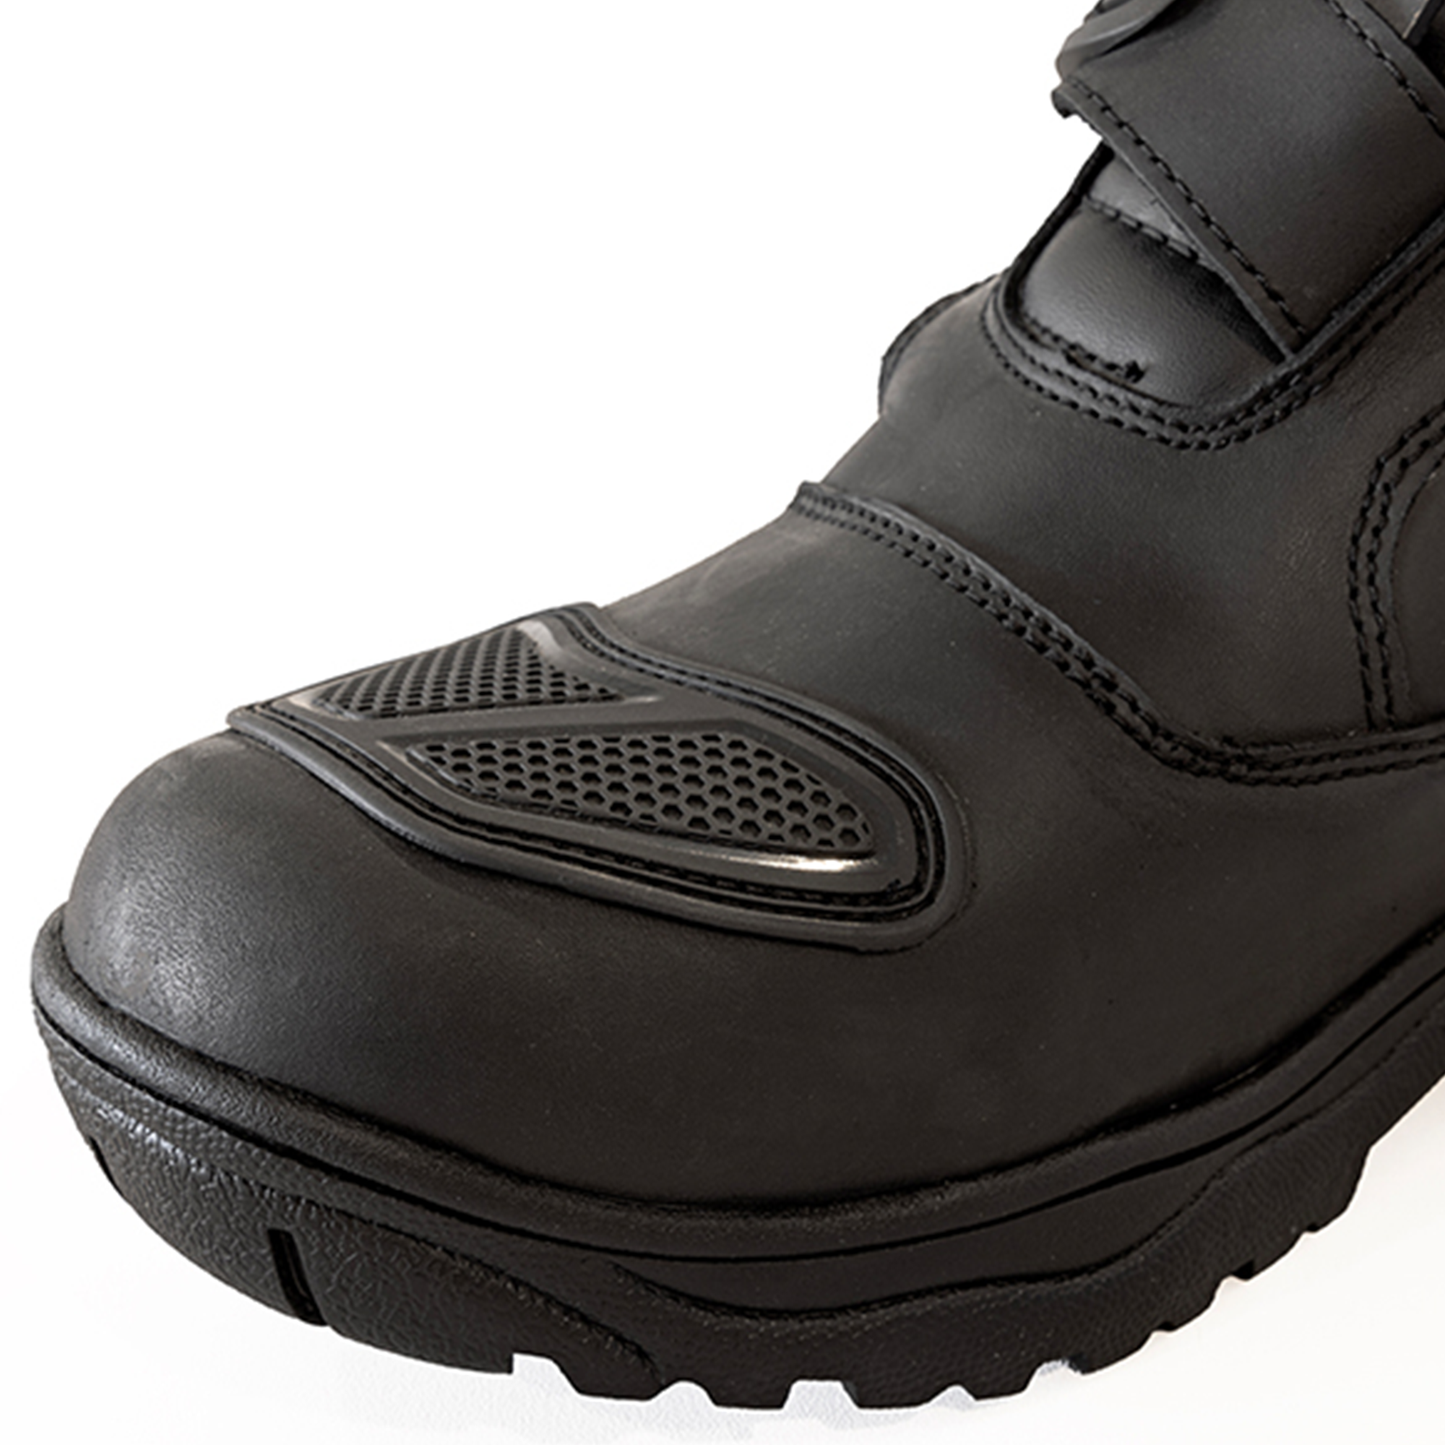 Richa Colt Short Boot - Black